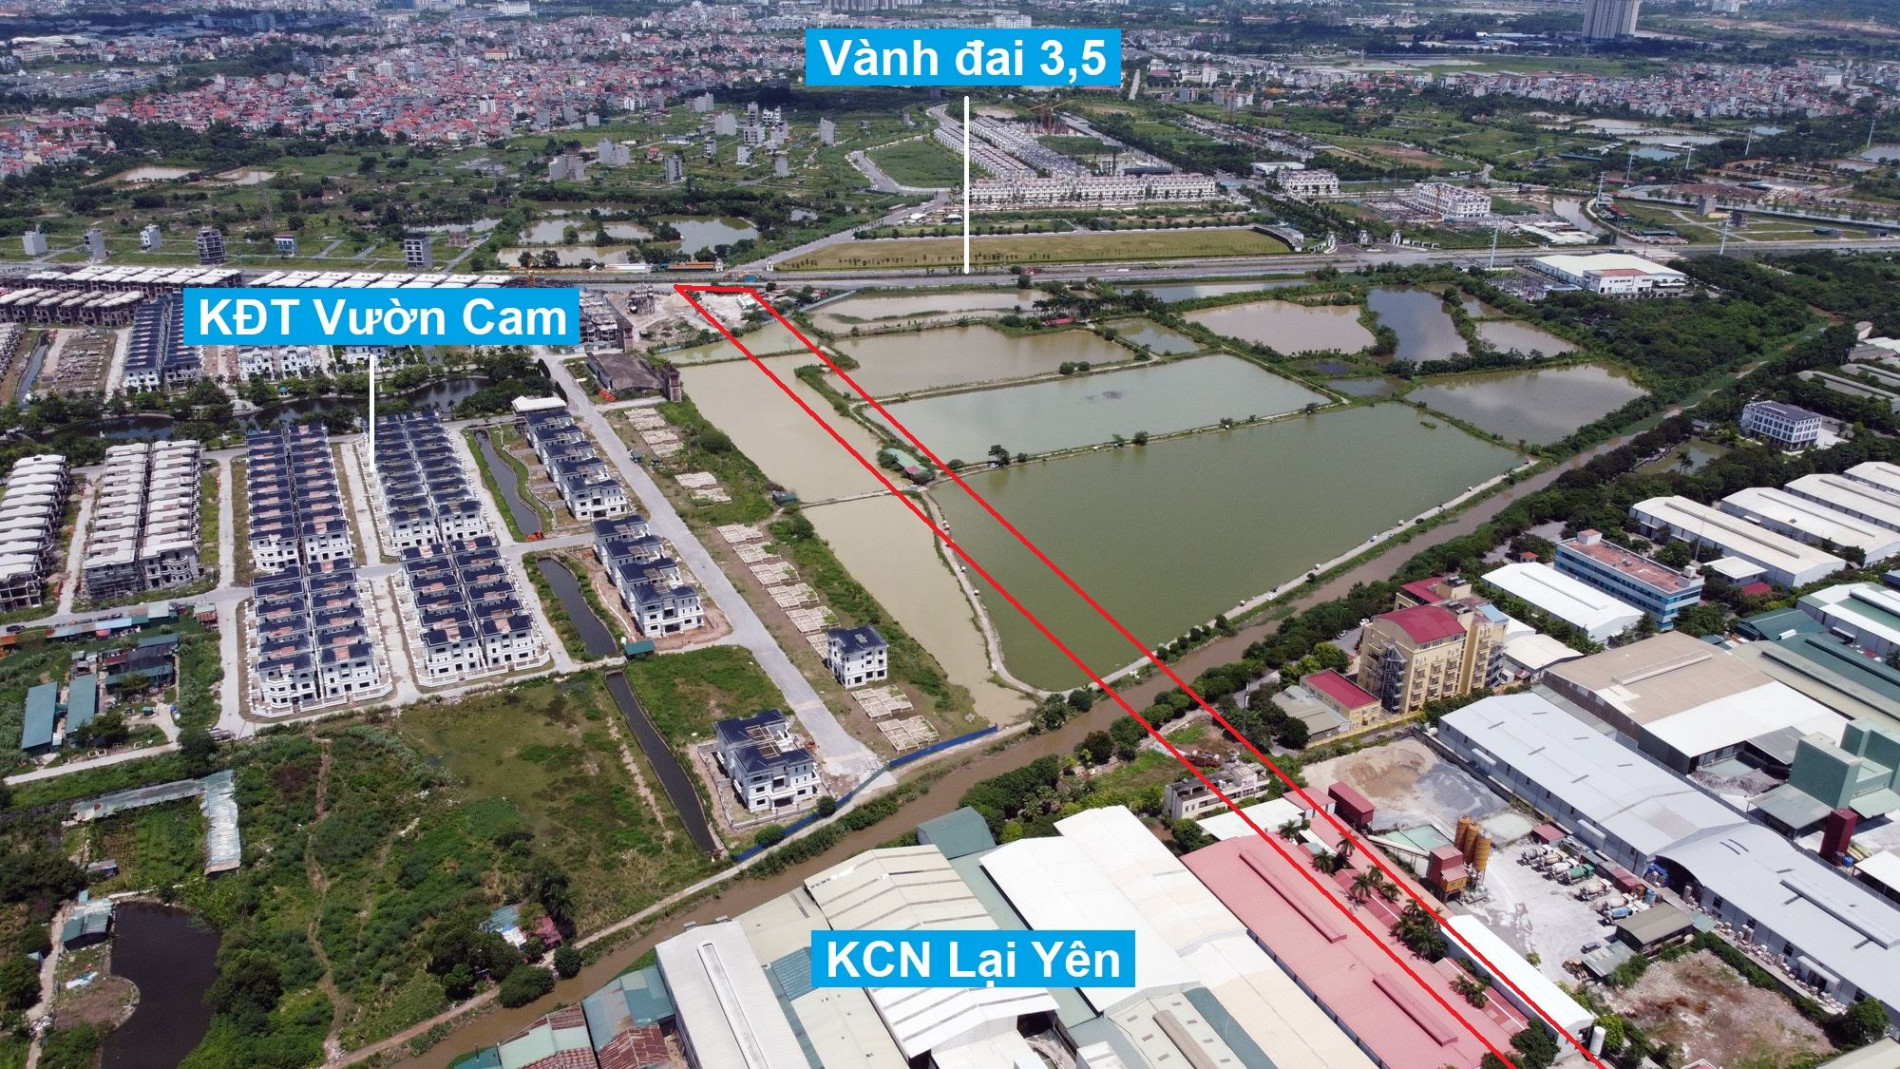 Đường sẽ mở theo quy hoạch ở xã Lại Yên, Hoài Đức, Hà Nội (phần 3)